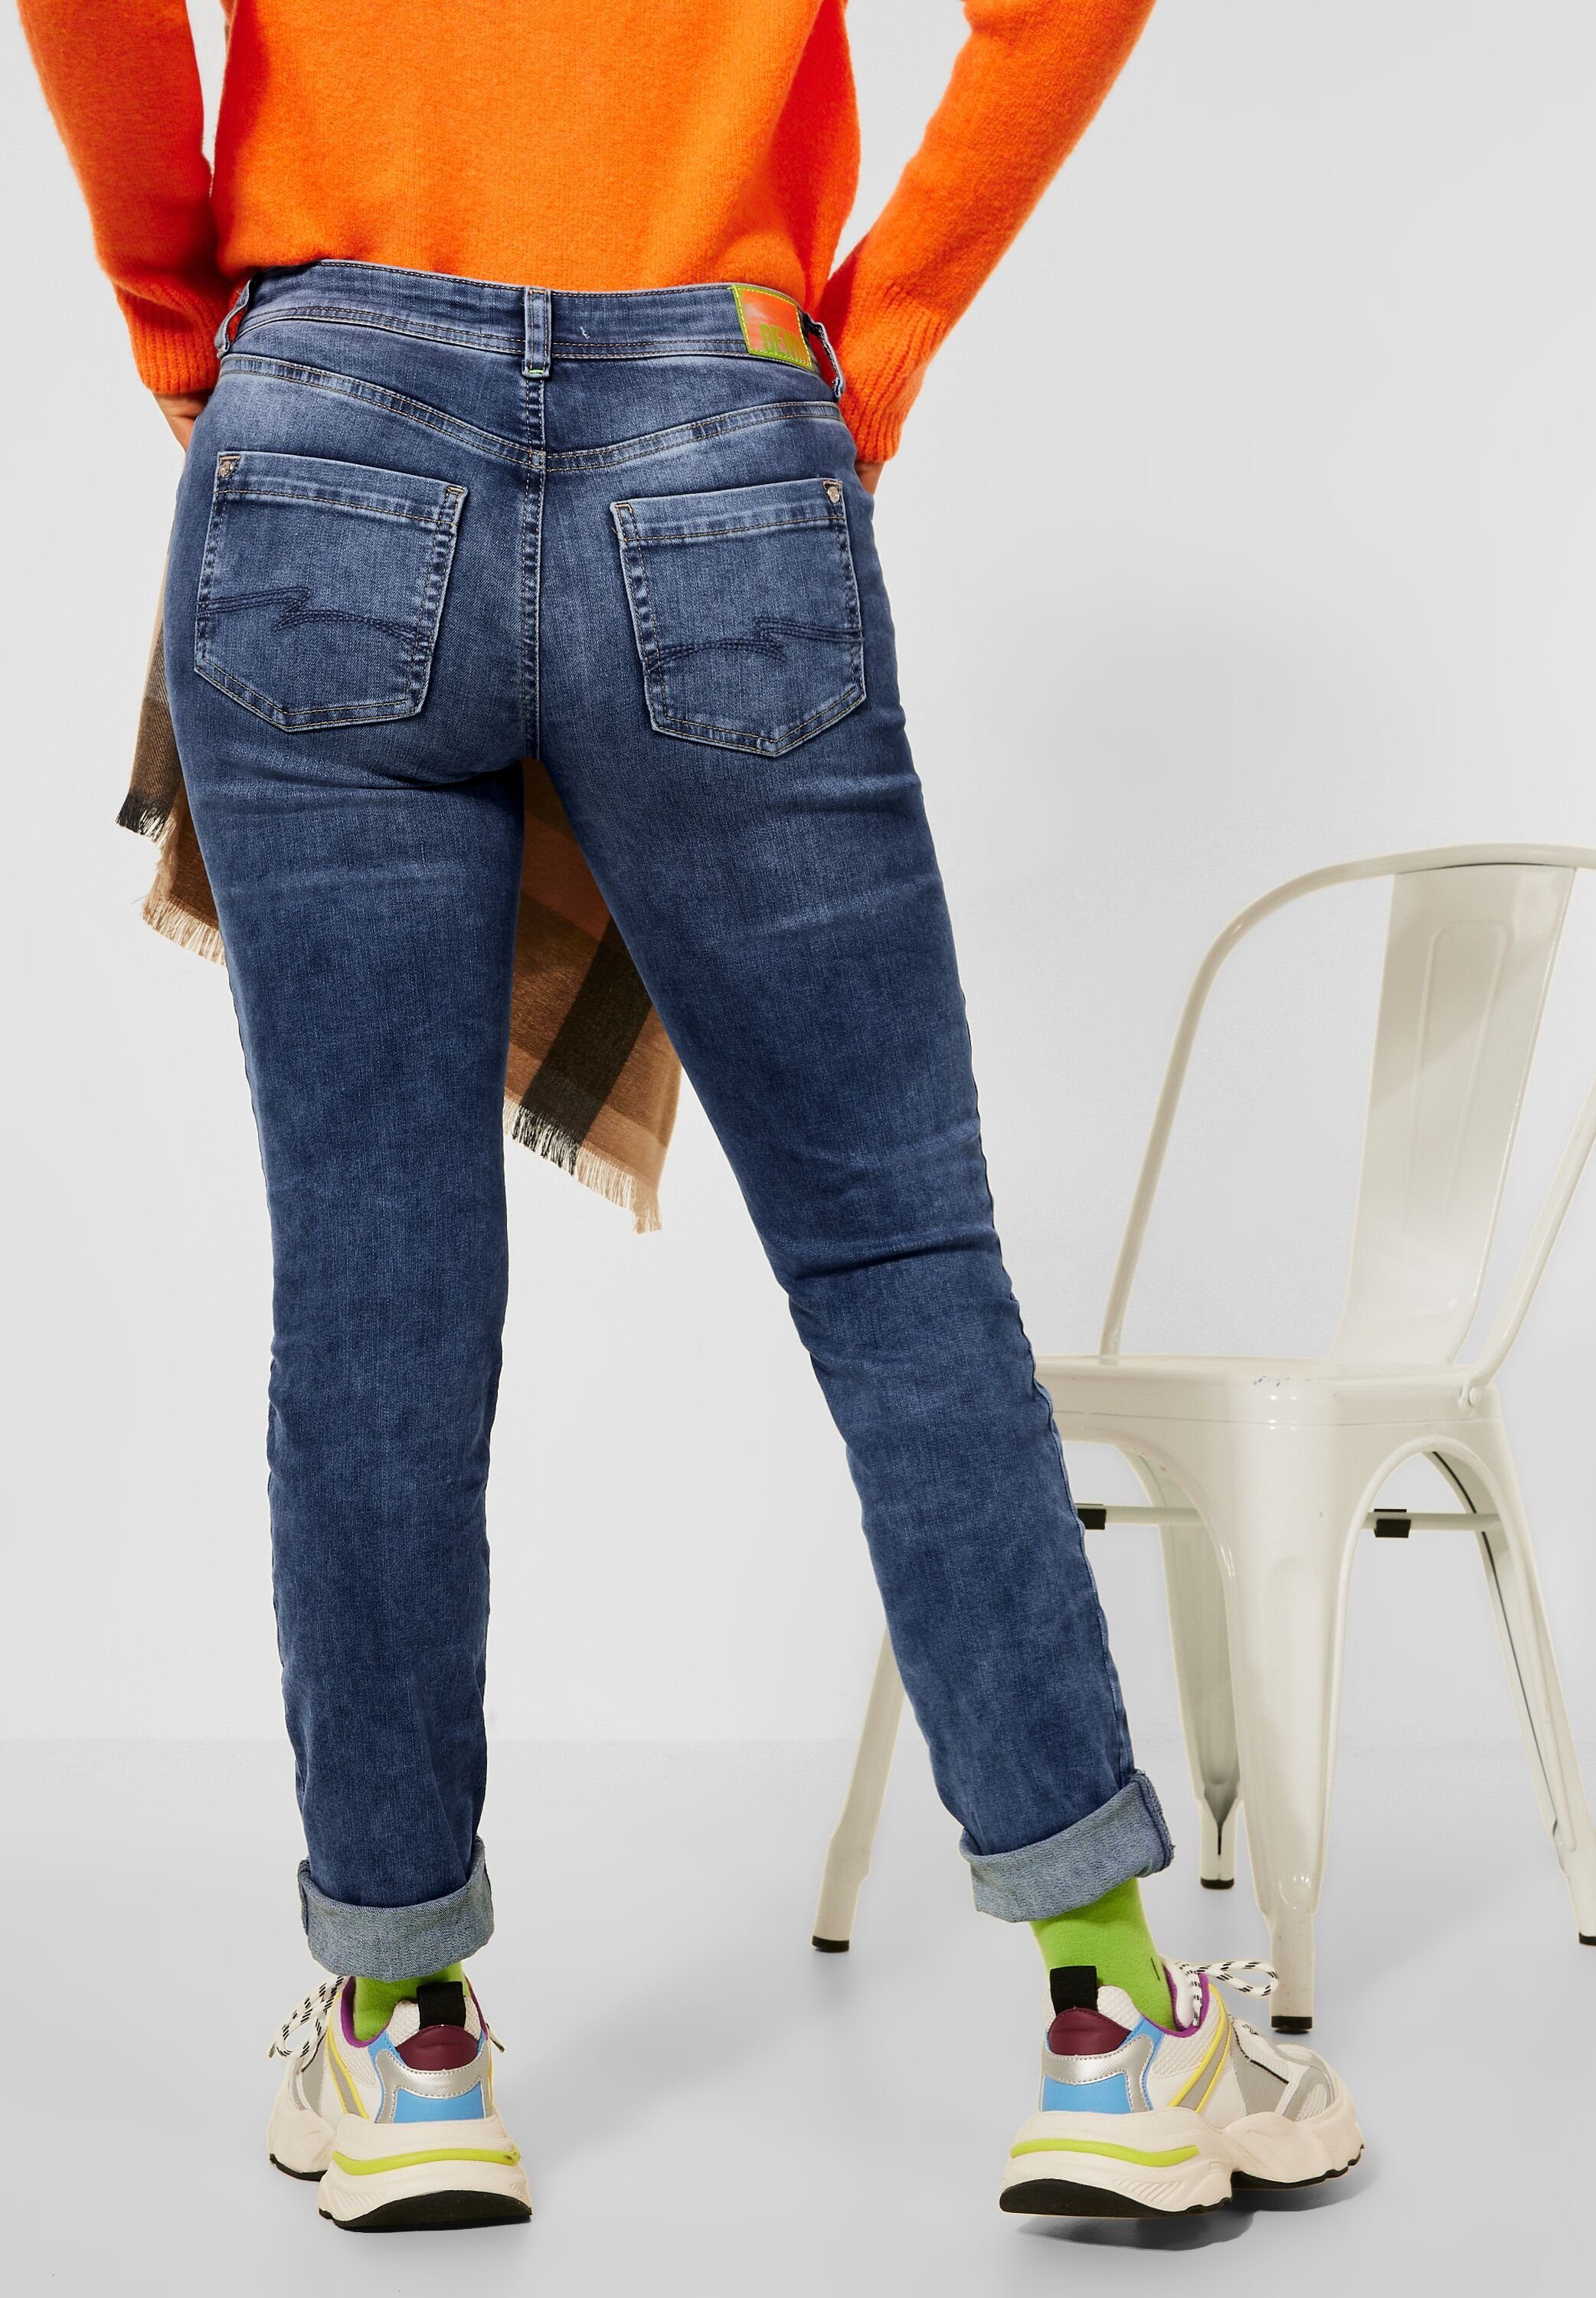 Style, STREET Knopf ONE Comfort-fit-Jeans Reißverschluss und 4-Pocket